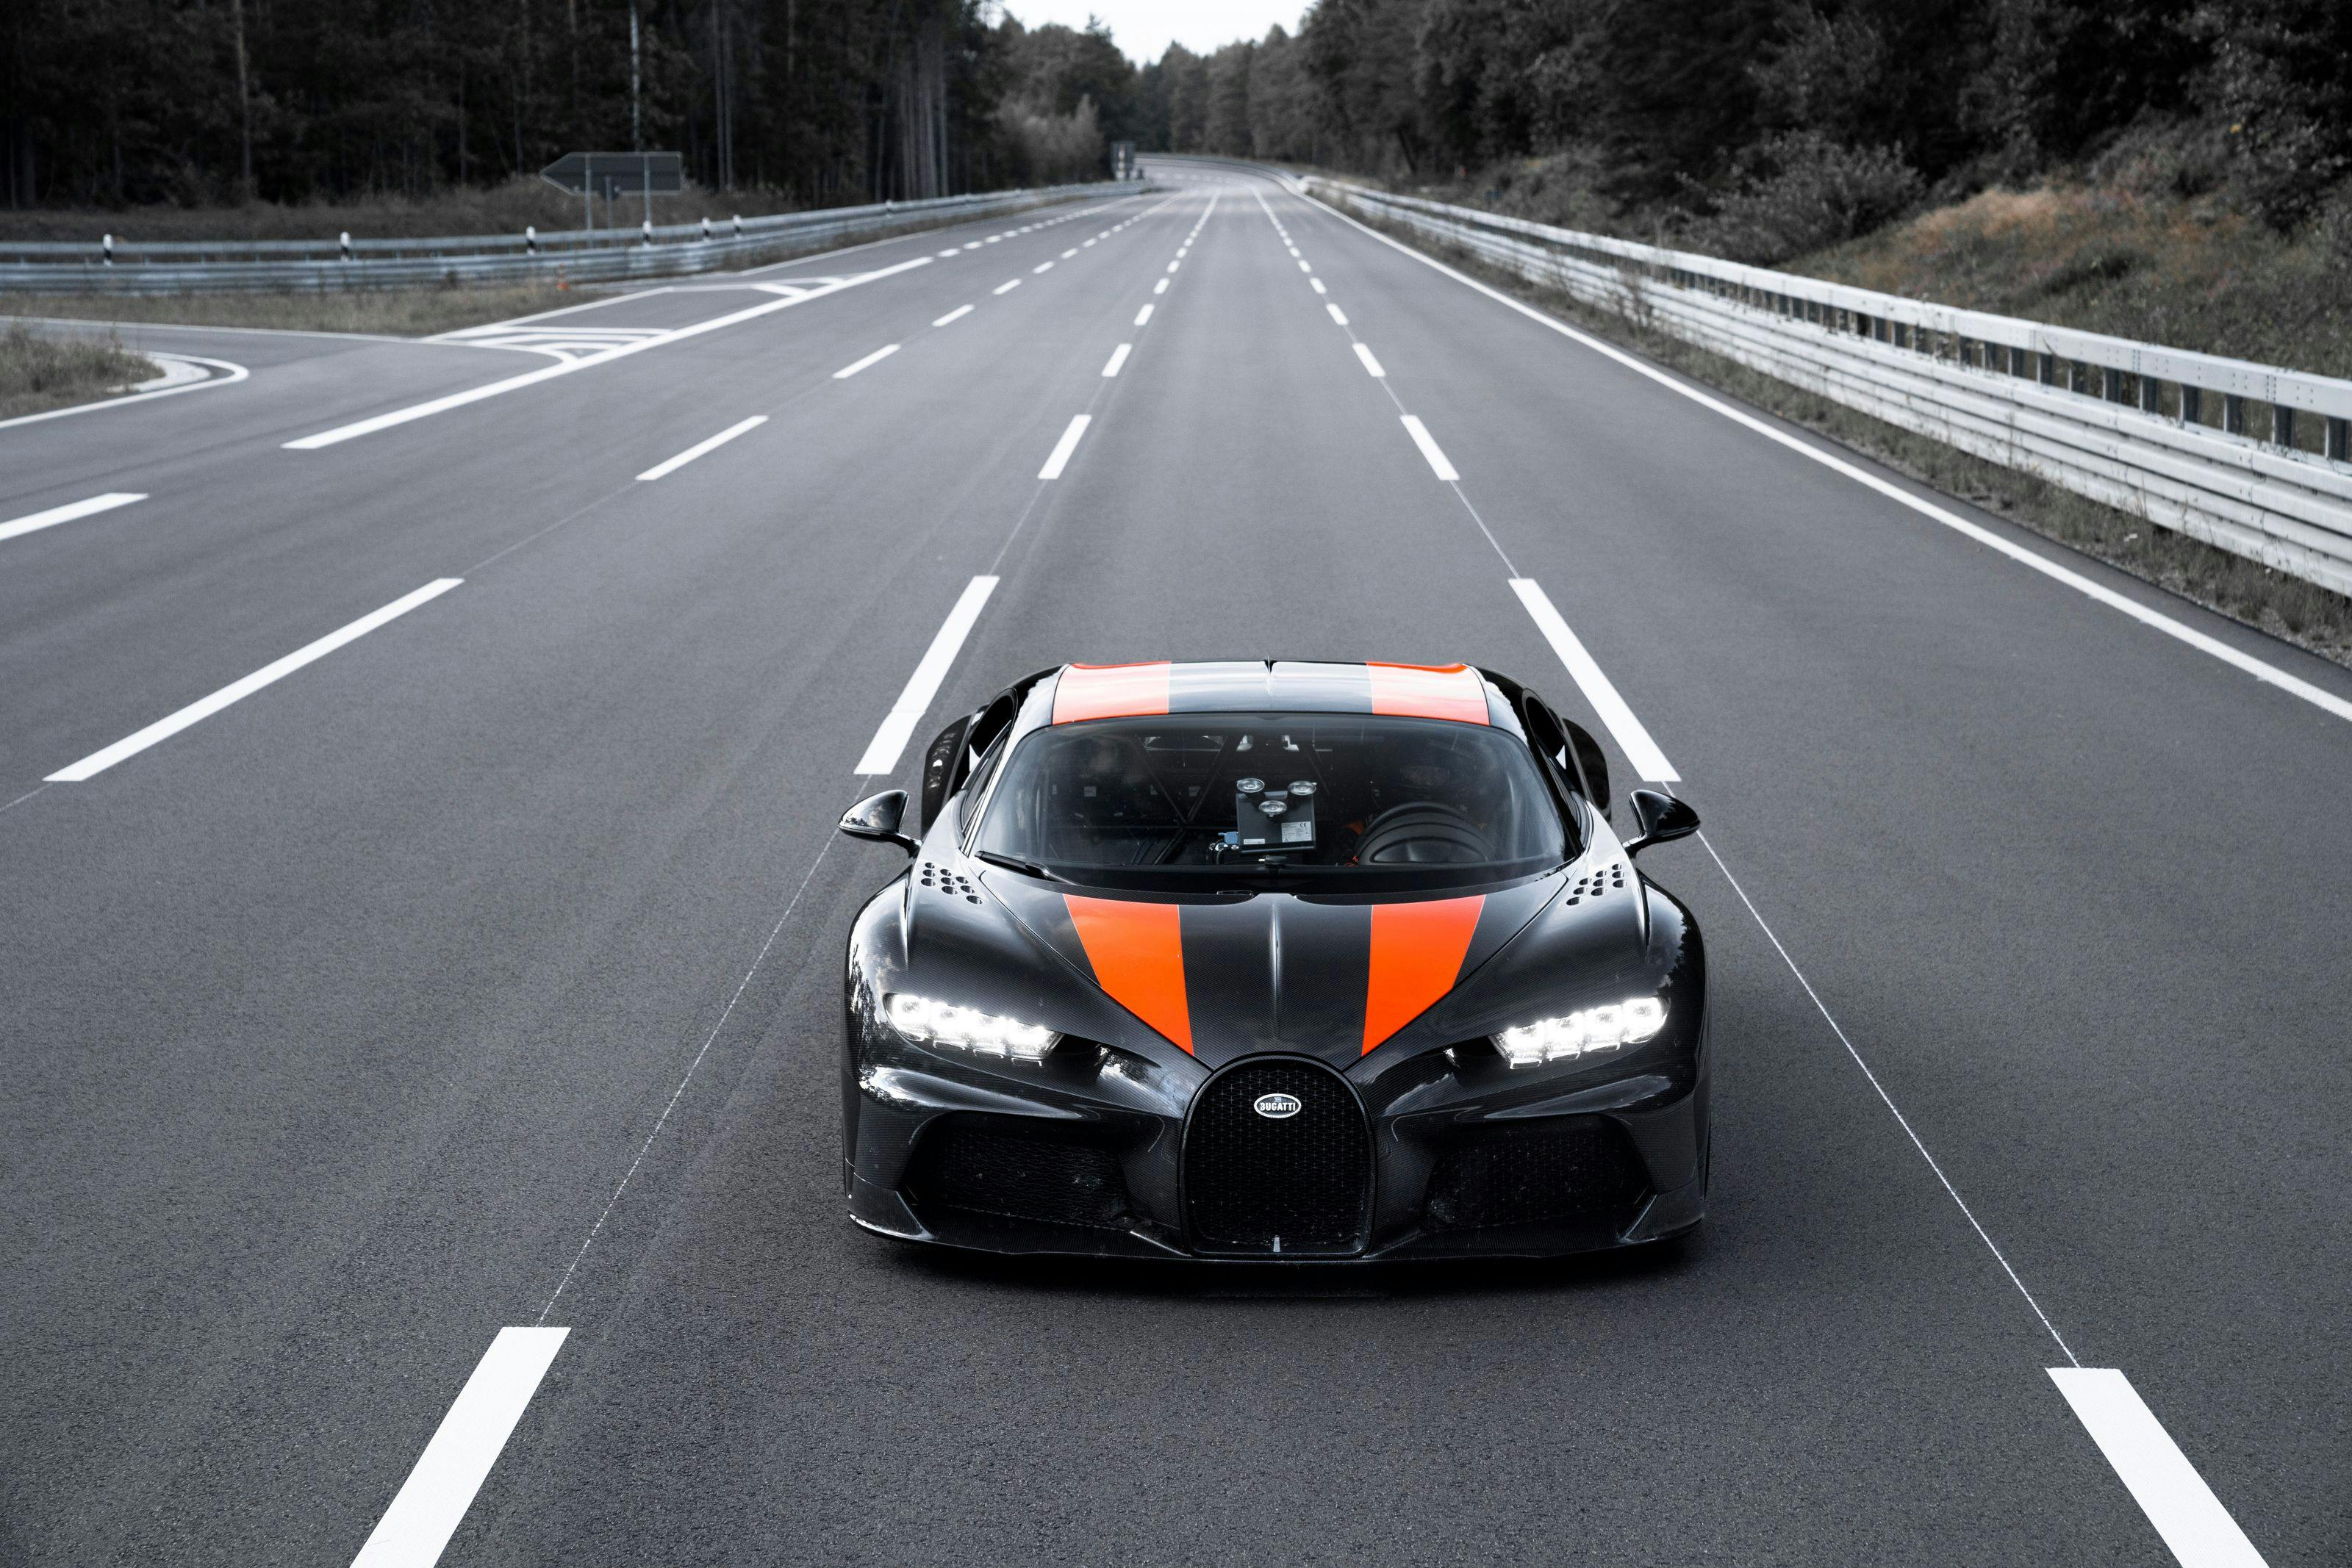 Bugatti breaks the 300 mph barrier